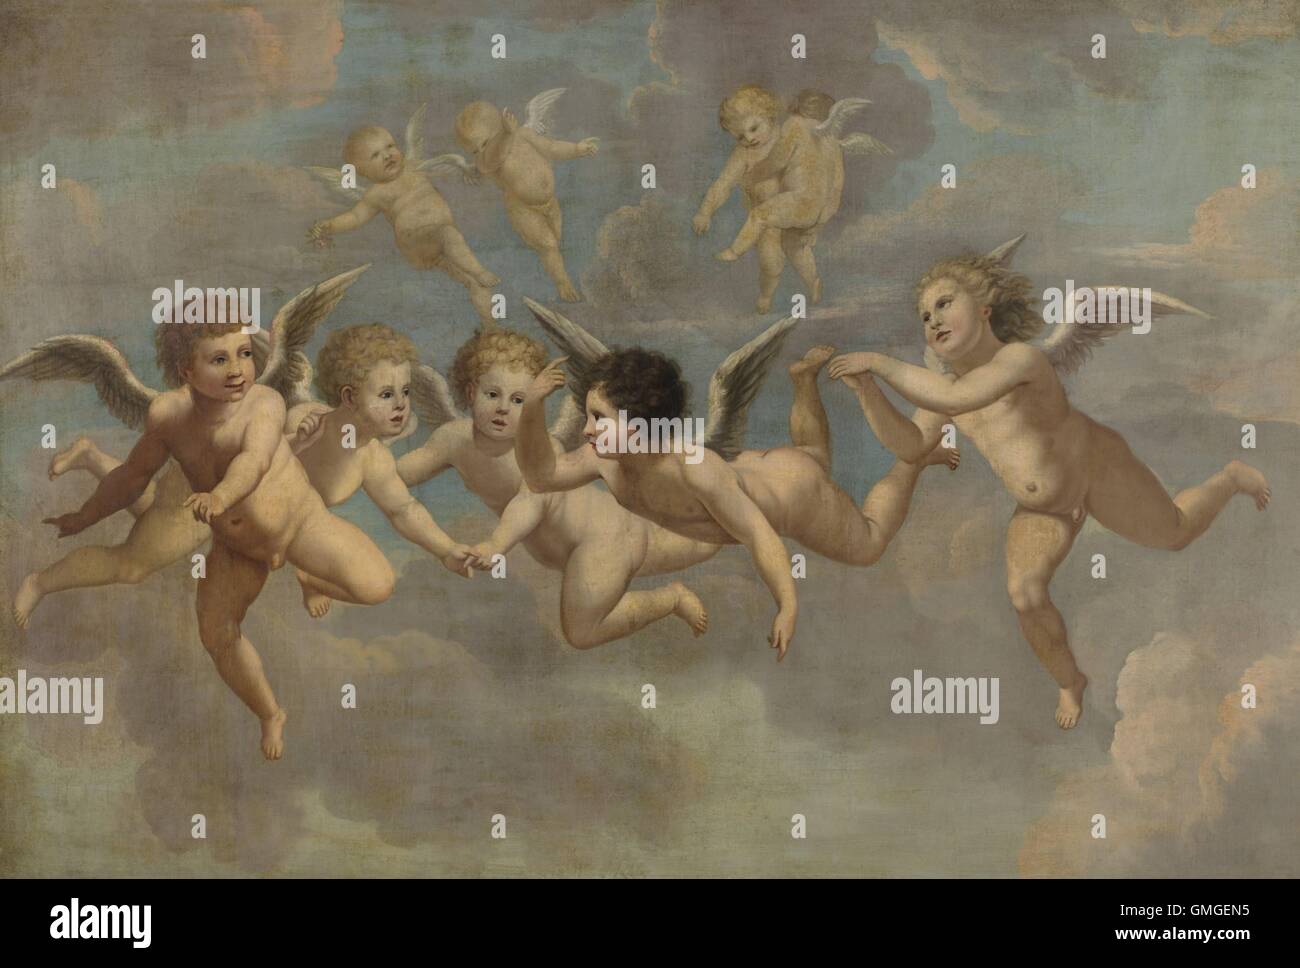 Fünf fliegende Putti, von anonymen Künstler, c. 1650, europäische Malerei. Ehemals Teil der ein Deckengemälde. Putten stellen nicht-religiösen Leidenschaften, im Gegensatz zu den ähnlich aussehenden, biblische Putten (BSLOC 2016 6 214) Stockfoto